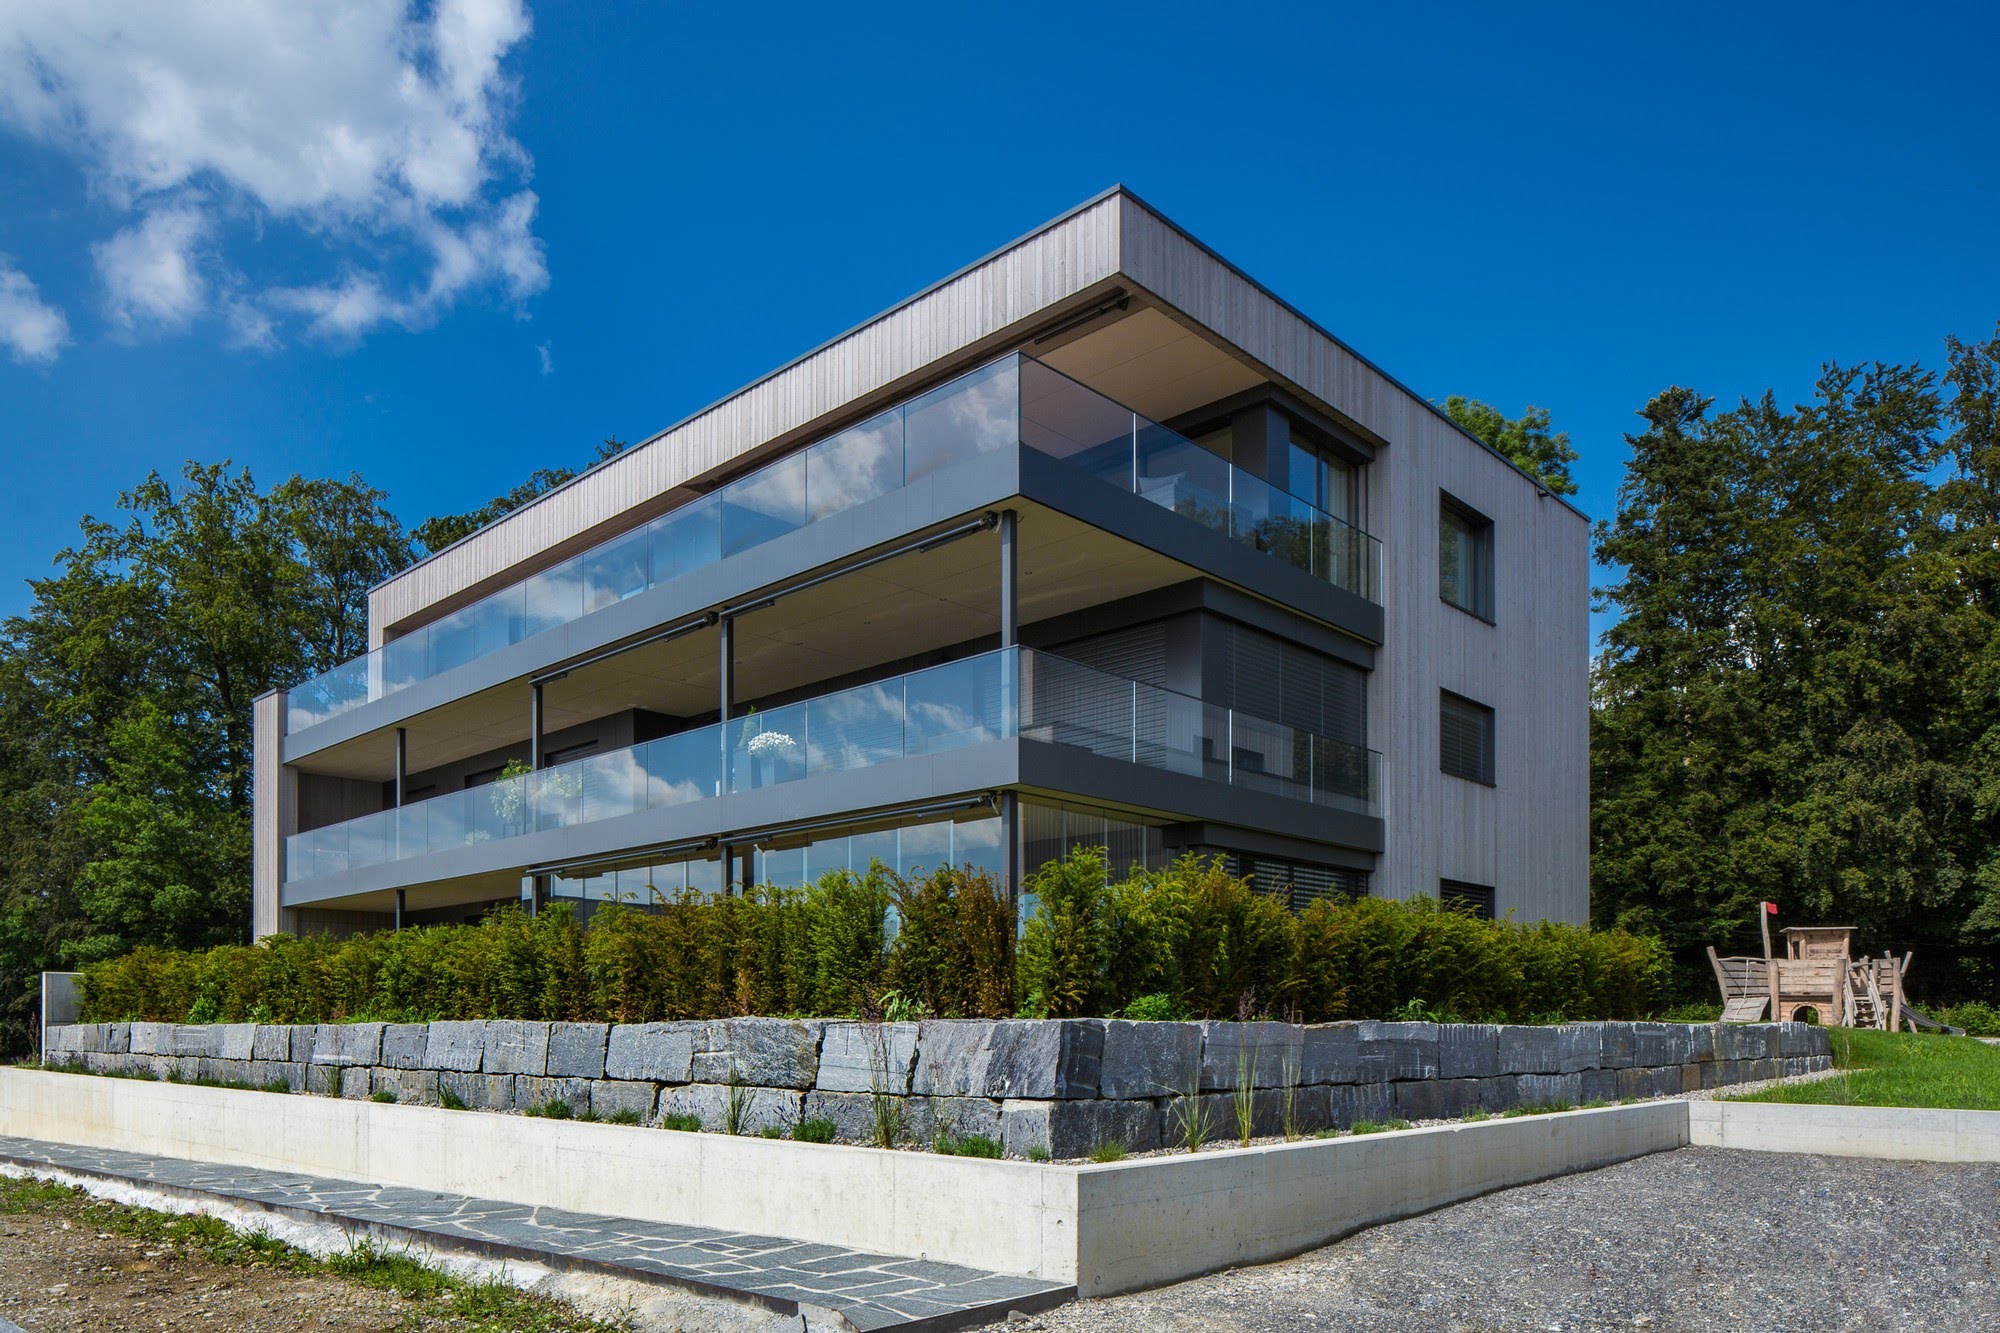 Wohnen MFH 4 MFH Striegelhöhe in Schenkon Architektur,Wohnungsbau,Wohnhäuser,Einfamilienhäuser,Mehrfamilienhäuser